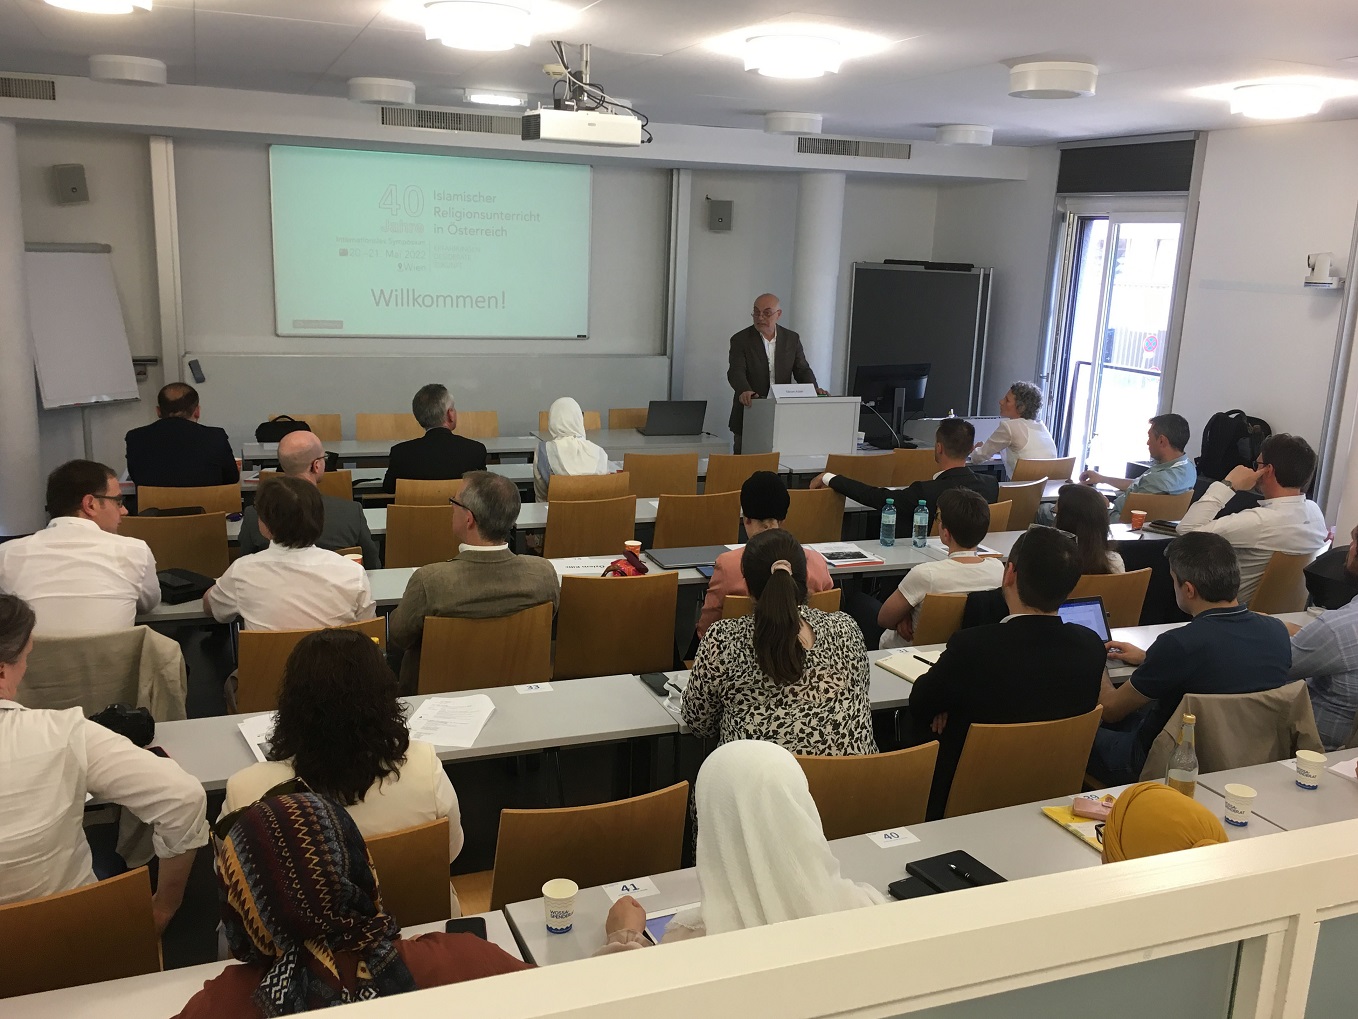 Bild: Foto von Prof. Ednan Aslan am Rednerpult, daneben eine Powerpoint-Präsentation; davor die zuhörenden Teilnehmenden im Hörsaal